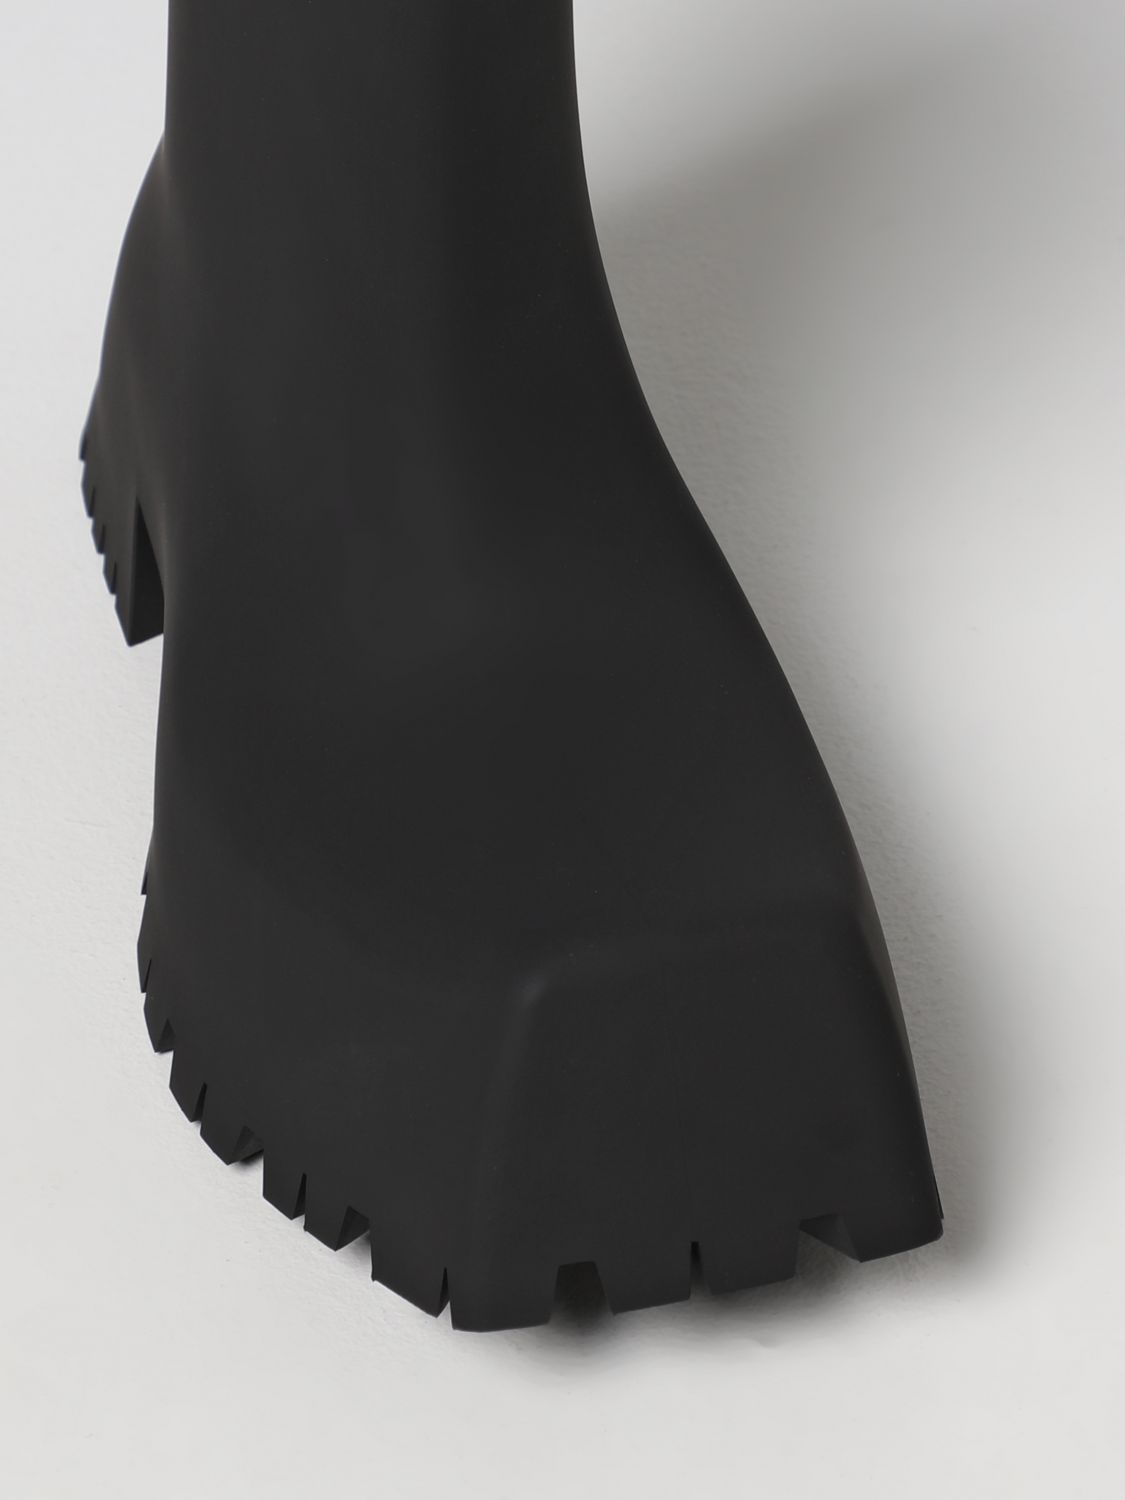 BALENCIAGA: Botines planos para Negro | Botines Balenciaga 679326 W0FO8 en línea en GIGLIO.COM